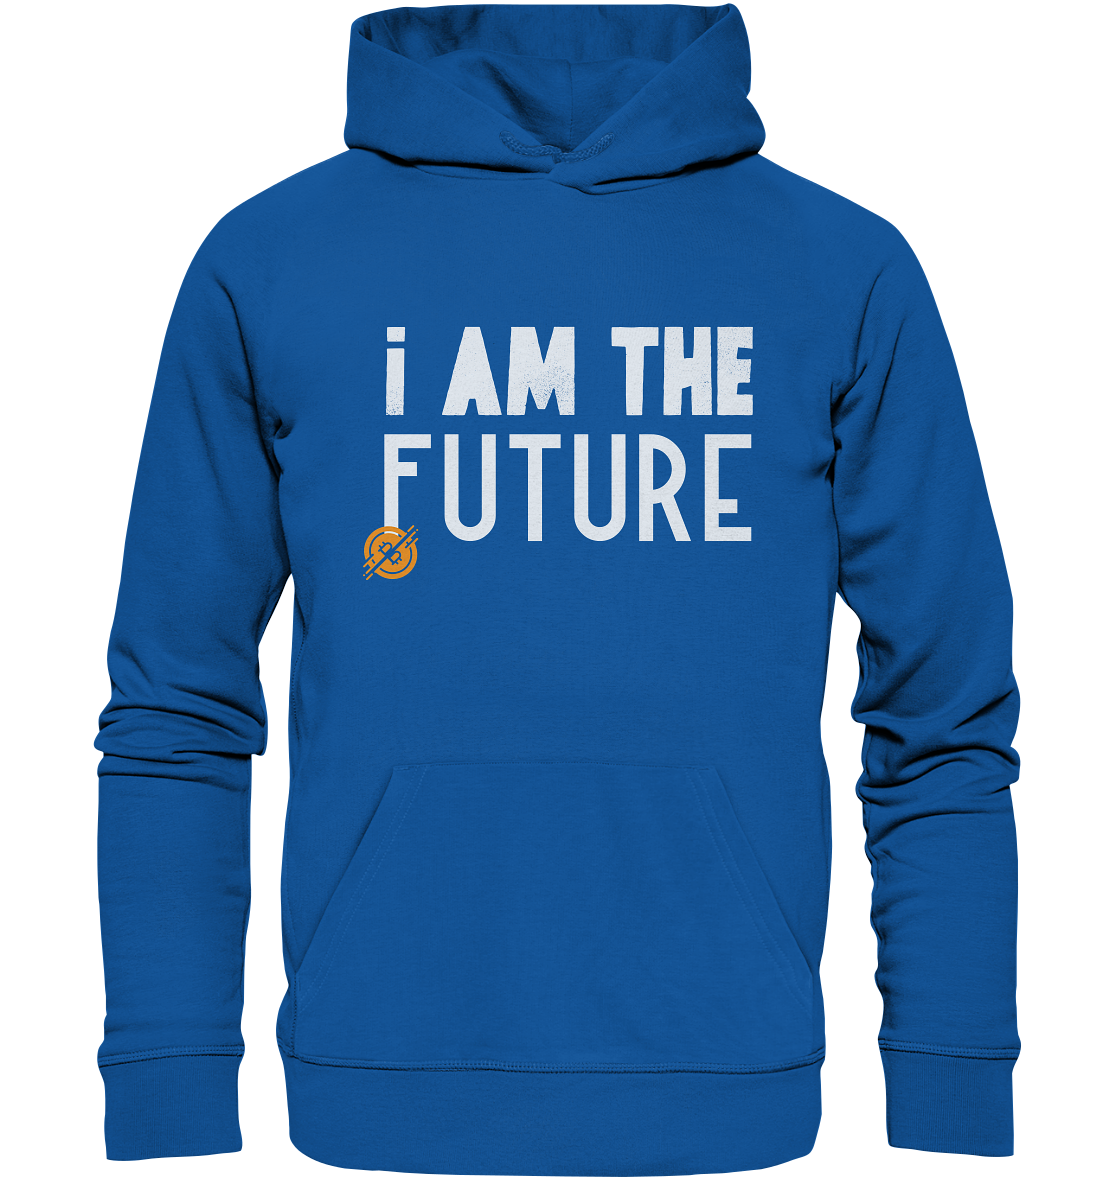 Bitcoin Hoodie "I am the future" - Organic Hoodie